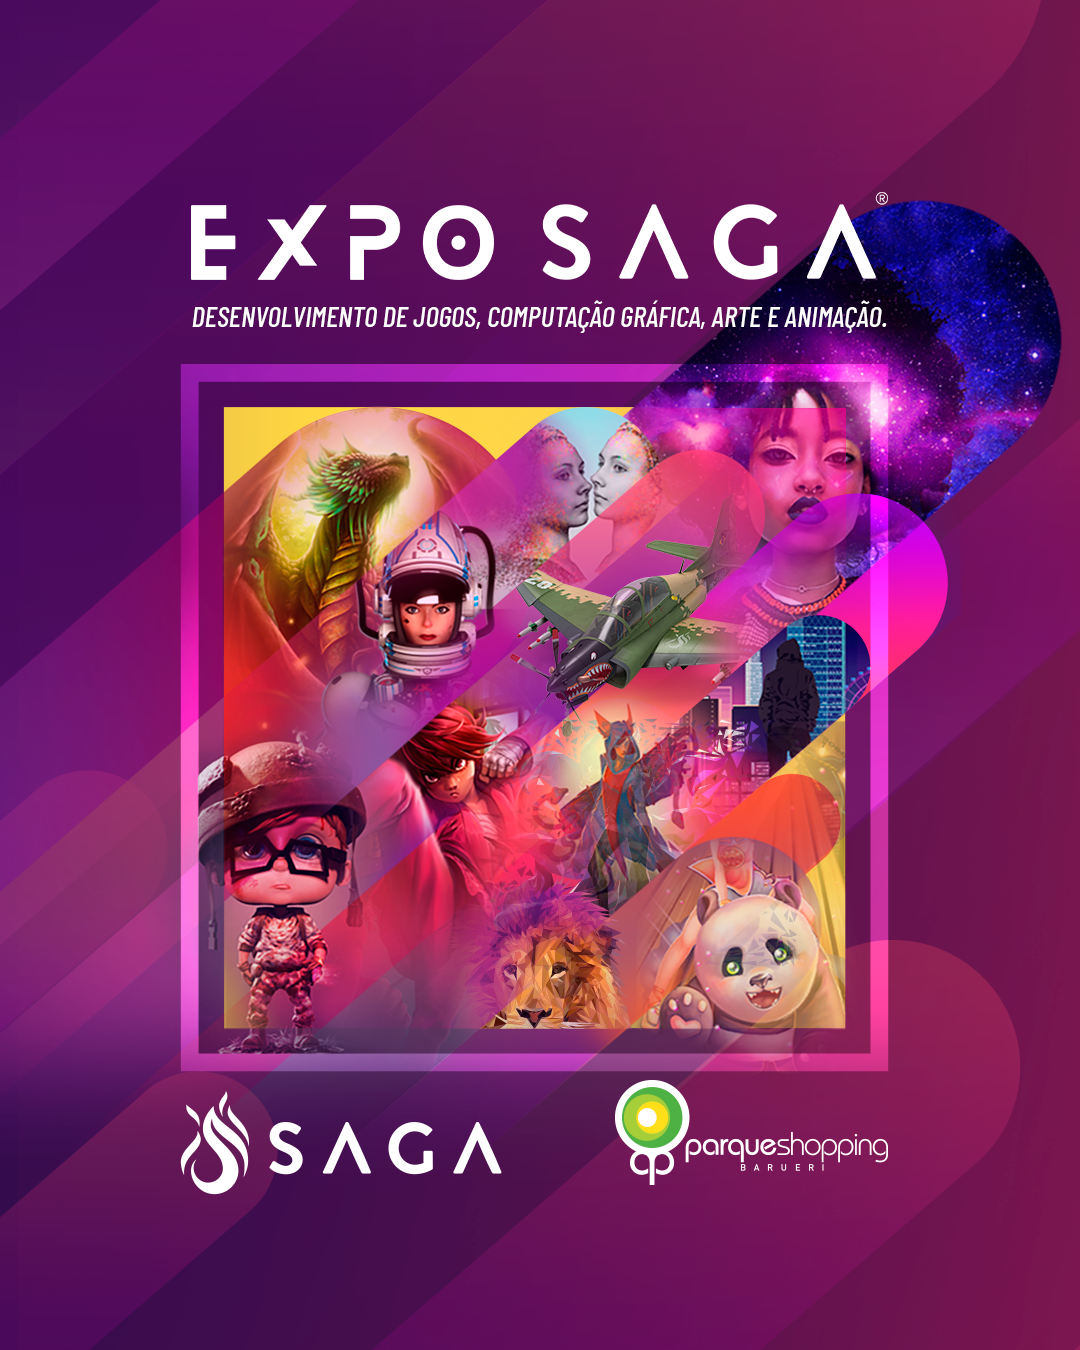 Expo Saga no Parque Shopping Barueri